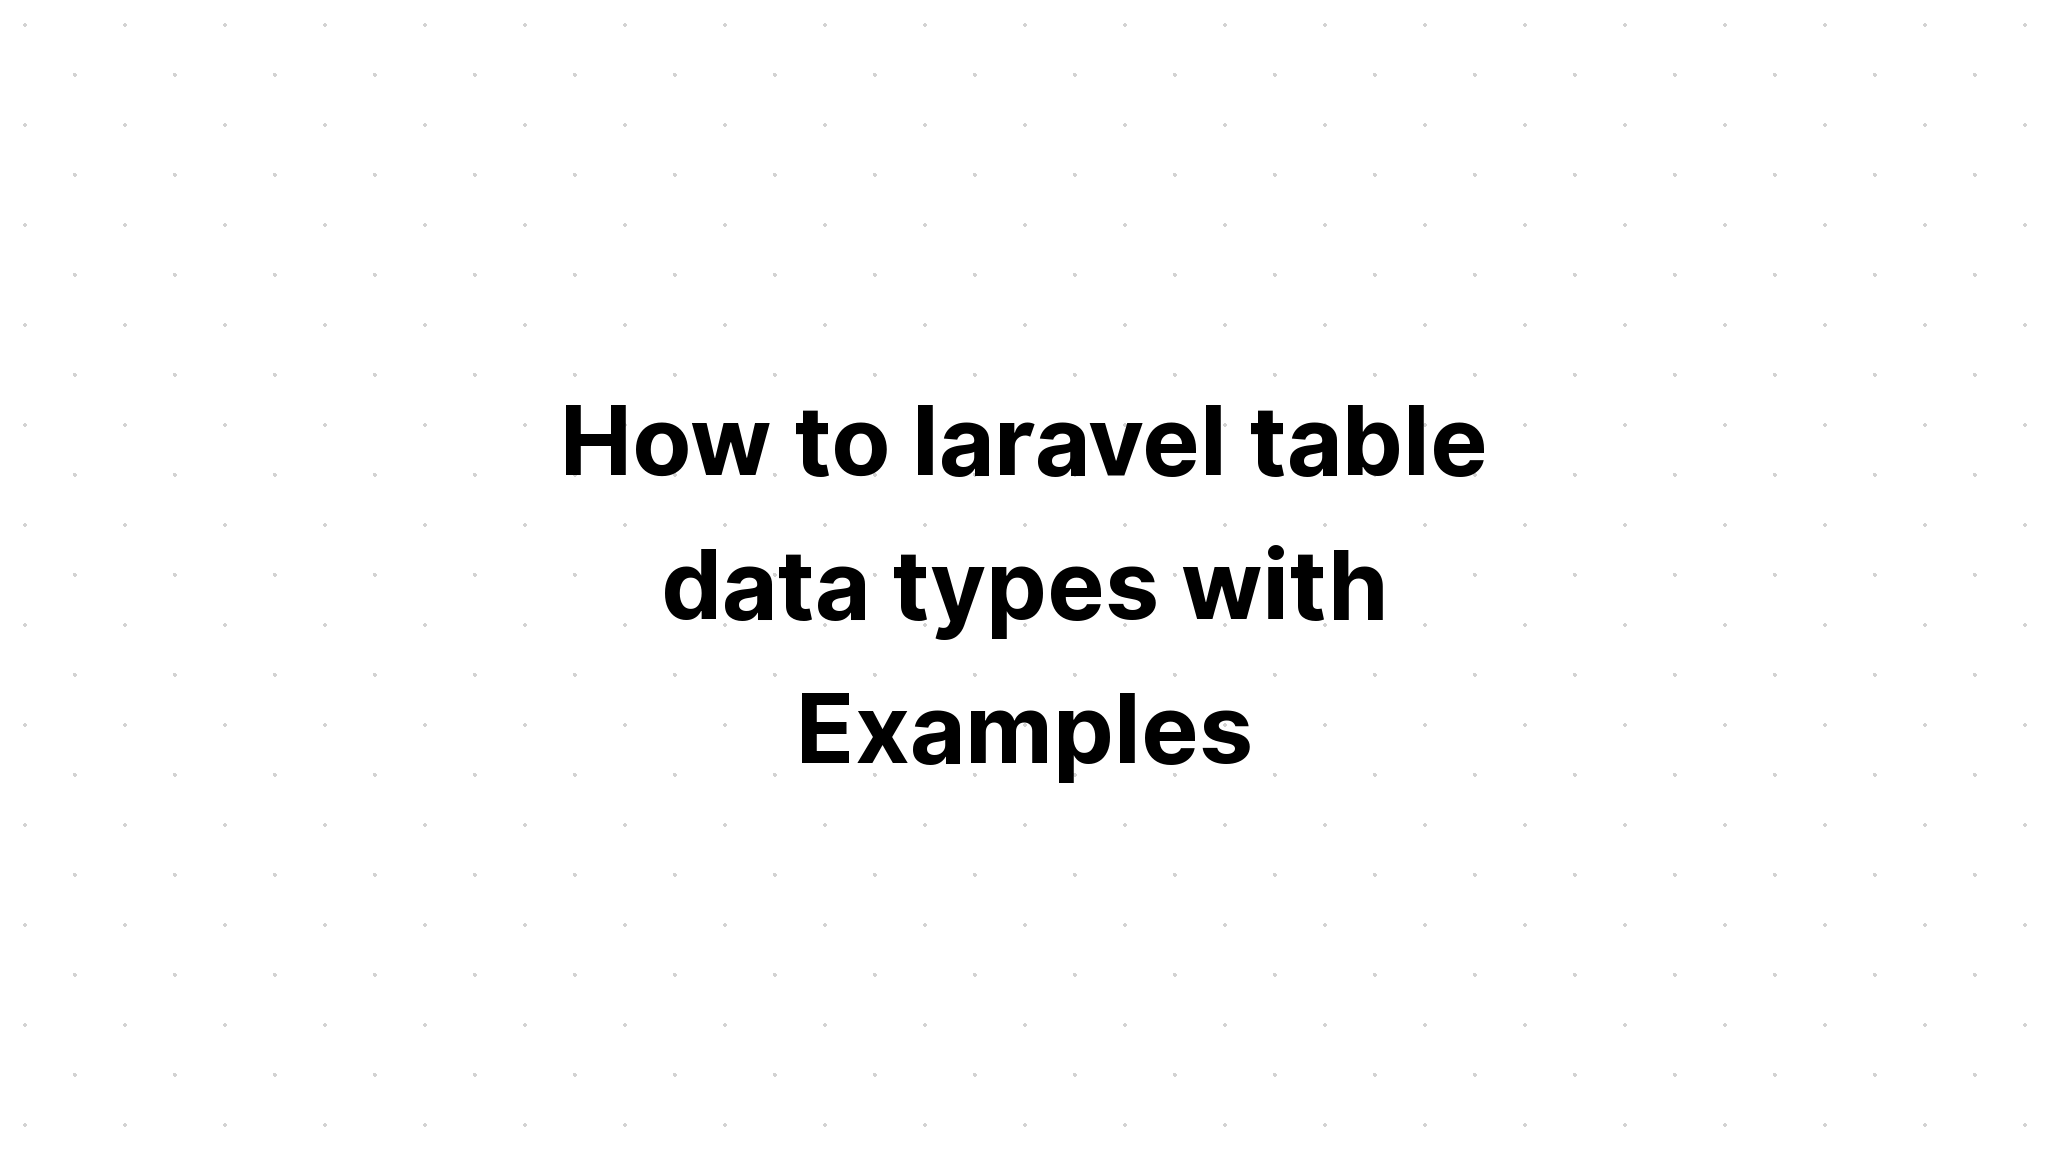 Cách sử dụng các kiểu dữ liệu bảng trong laravel với các ví dụ